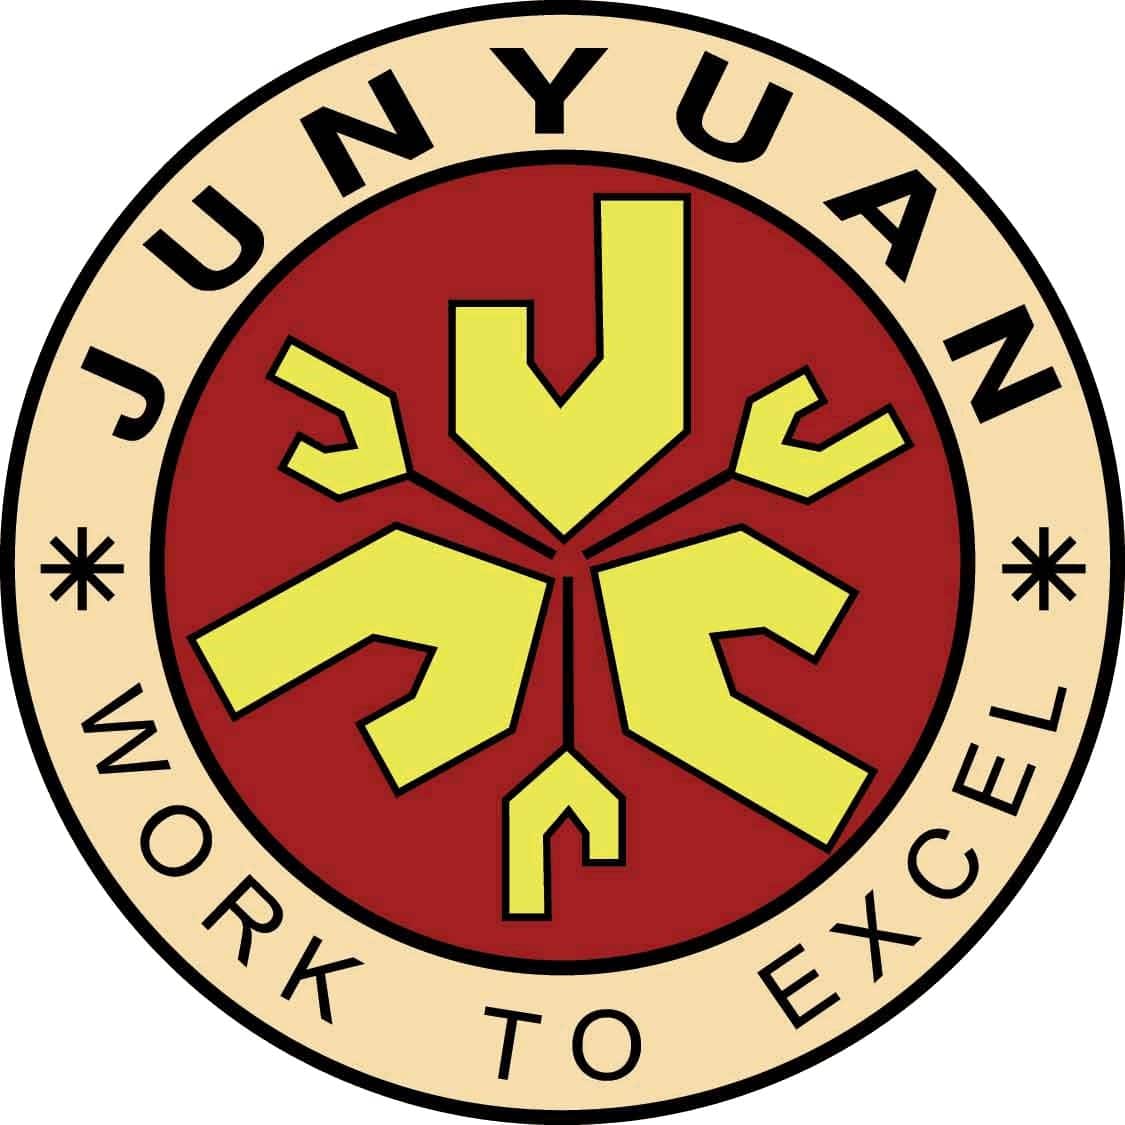 Junyuan Primary School Logo